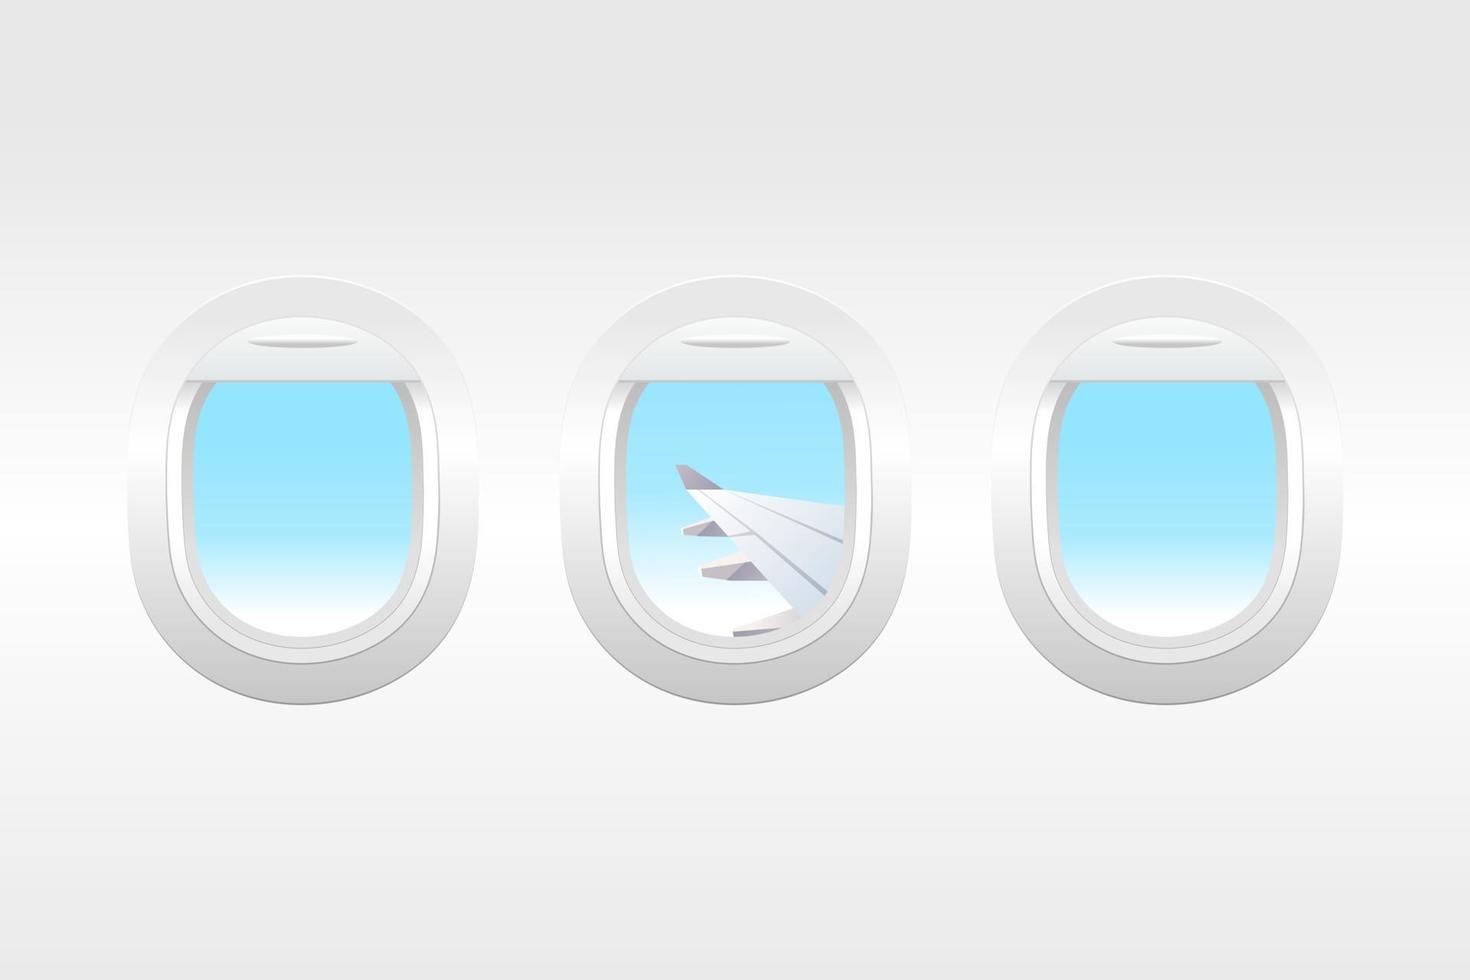 Flugzeugfenster Innenansicht. Flugzeugfenster mit bewölkter Außenseite. vektor